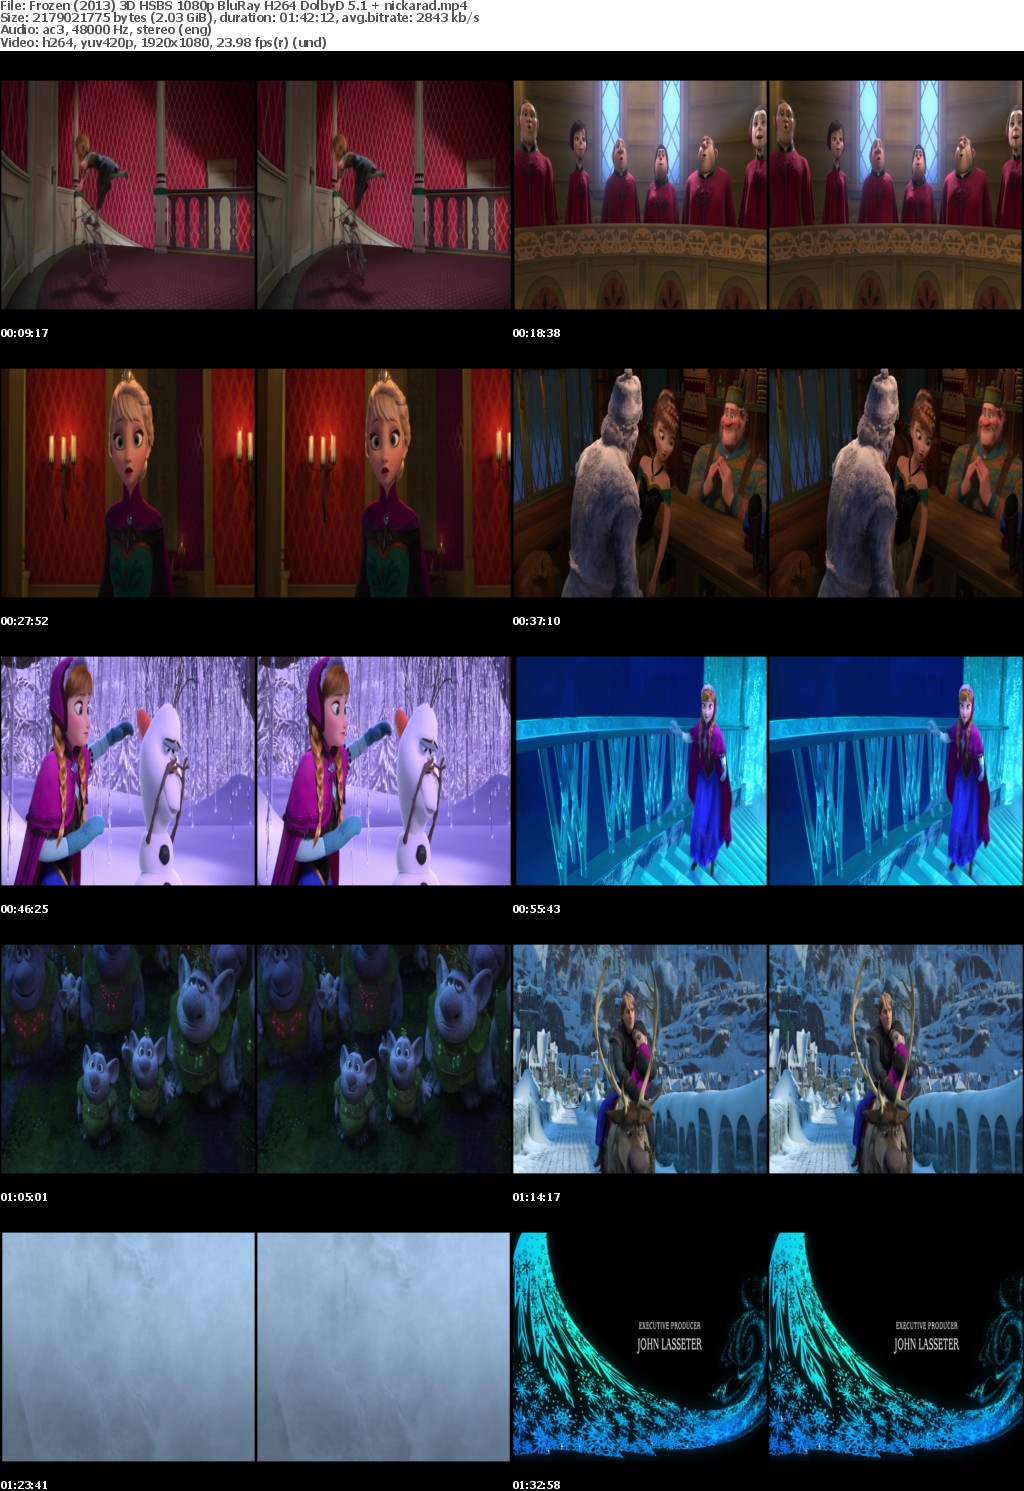 Frozen (2013) 3D HSBS 1080p BluRay H264 DolbyD 5 1 nickarad